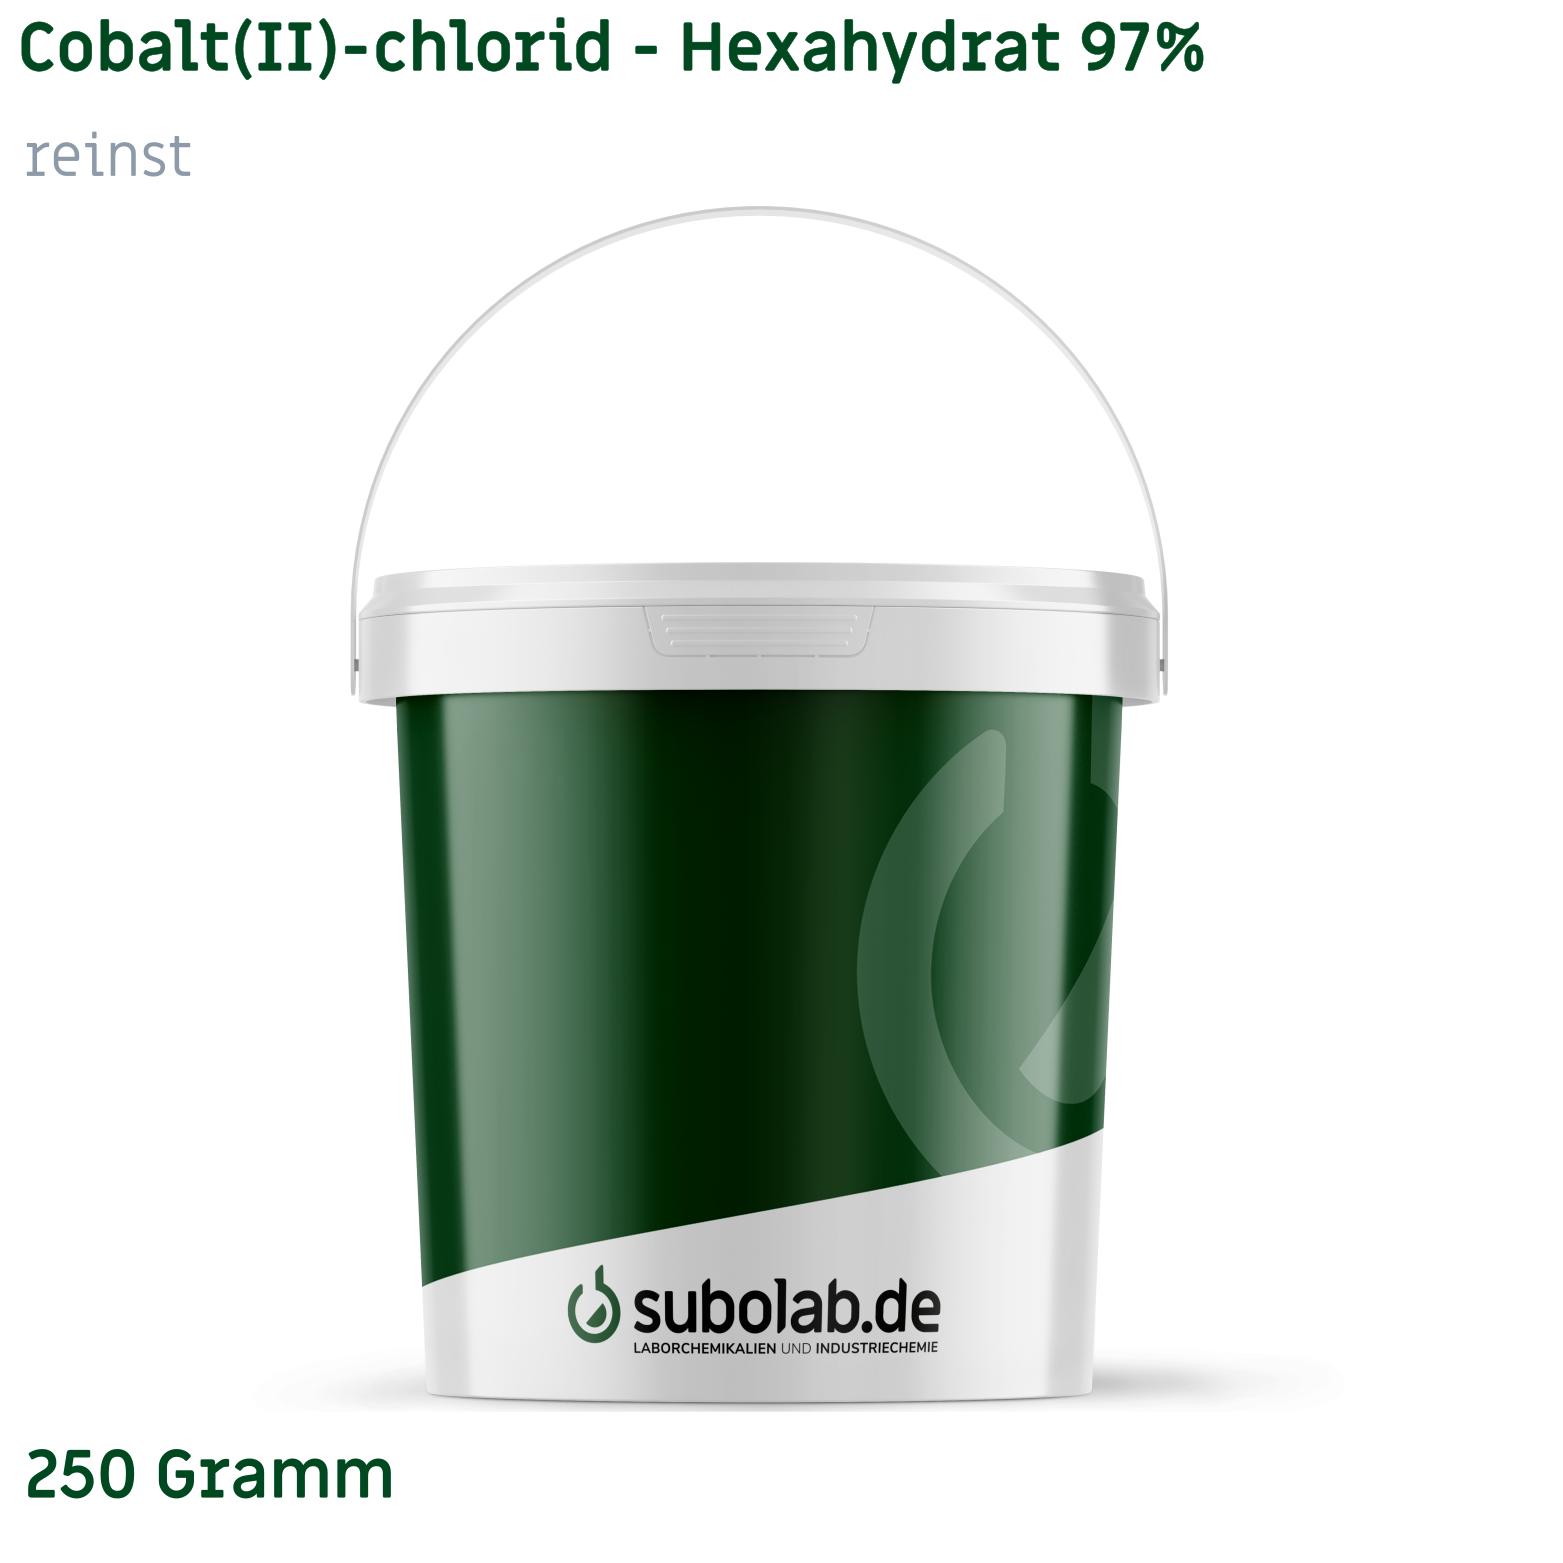 Bild von Cobalt(II)-chlorid - Hexahydrat 97% reinst (250 Gramm)